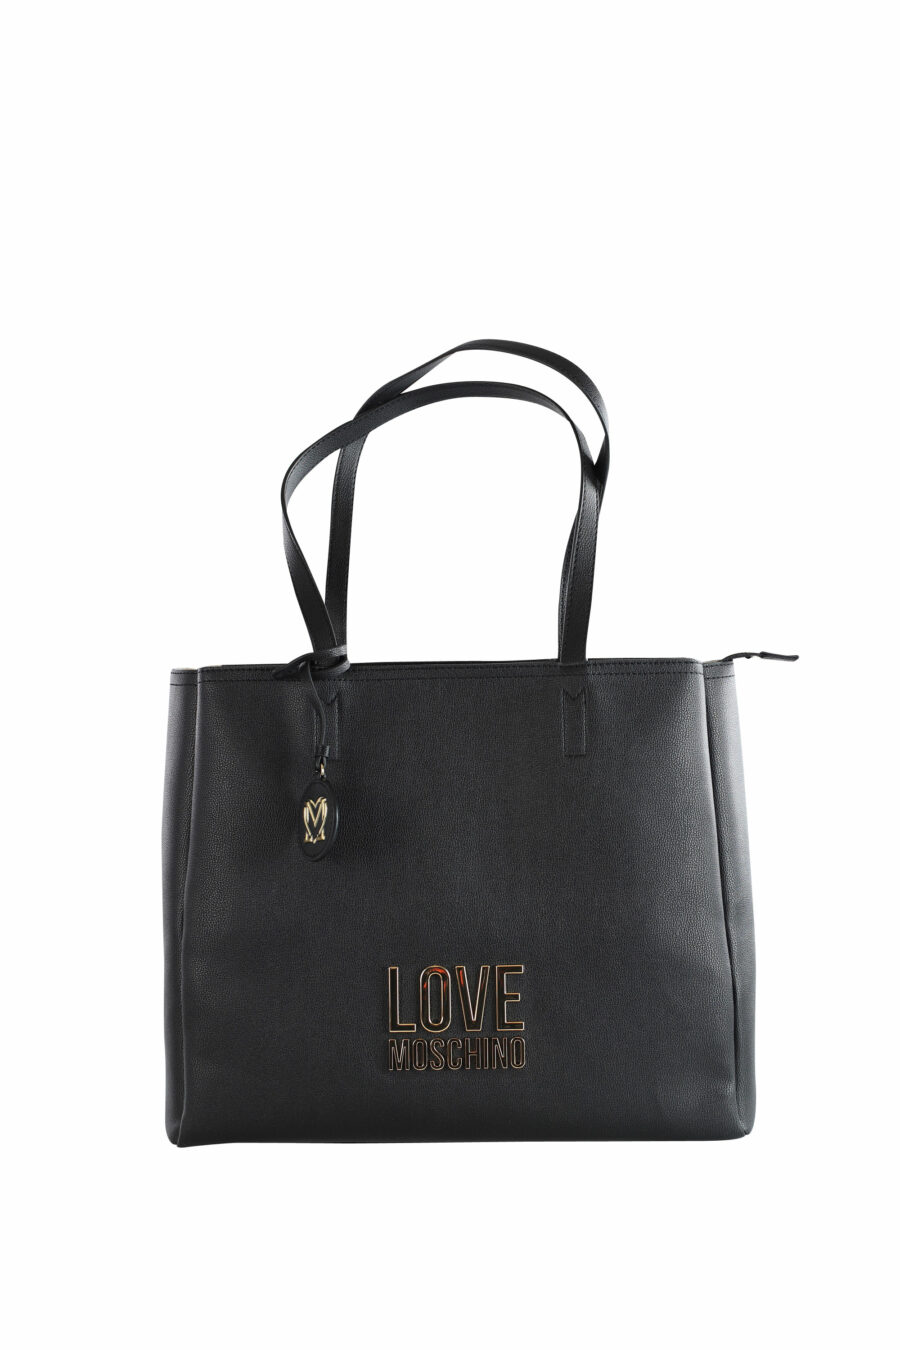 Schwarze Shopper-Tasche mit goldenem Logo-Schriftzug - IMG 3601